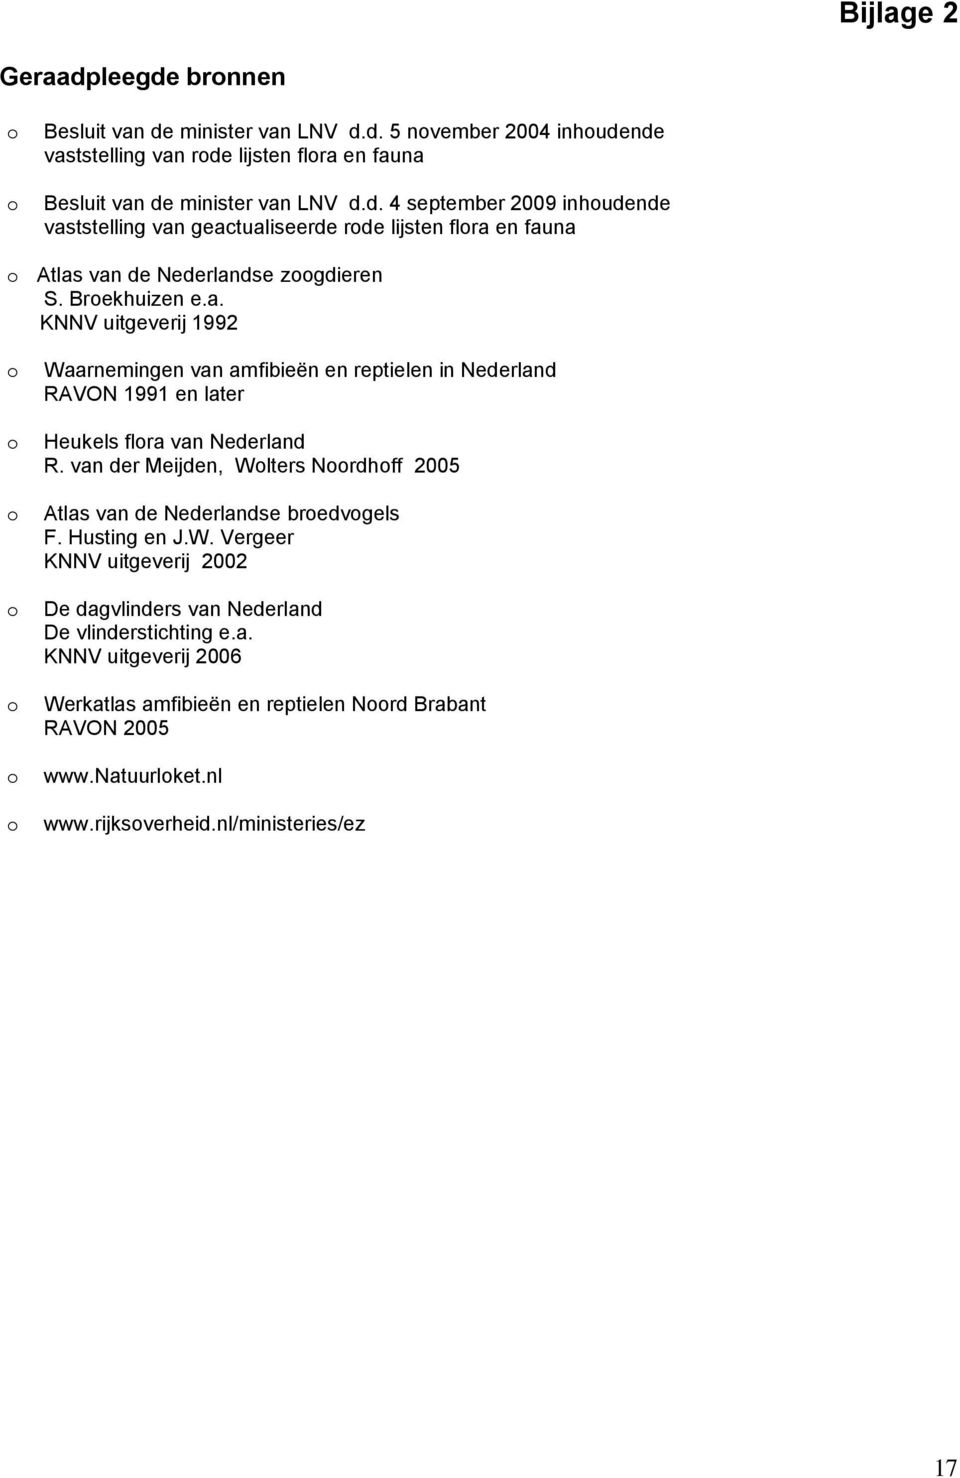 van der Meijden, Wlters Nrdhff 2005 Atlas van de Nederlandse bredvgels F. Husting en J.W. Vergeer KNNV uitgeverij 2002 De dagvlinders van Nederland De vlinderstichting e.a. KNNV uitgeverij 2006 Werkatlas amfibieën en reptielen Nrd Brabant RAVON 2005 www.